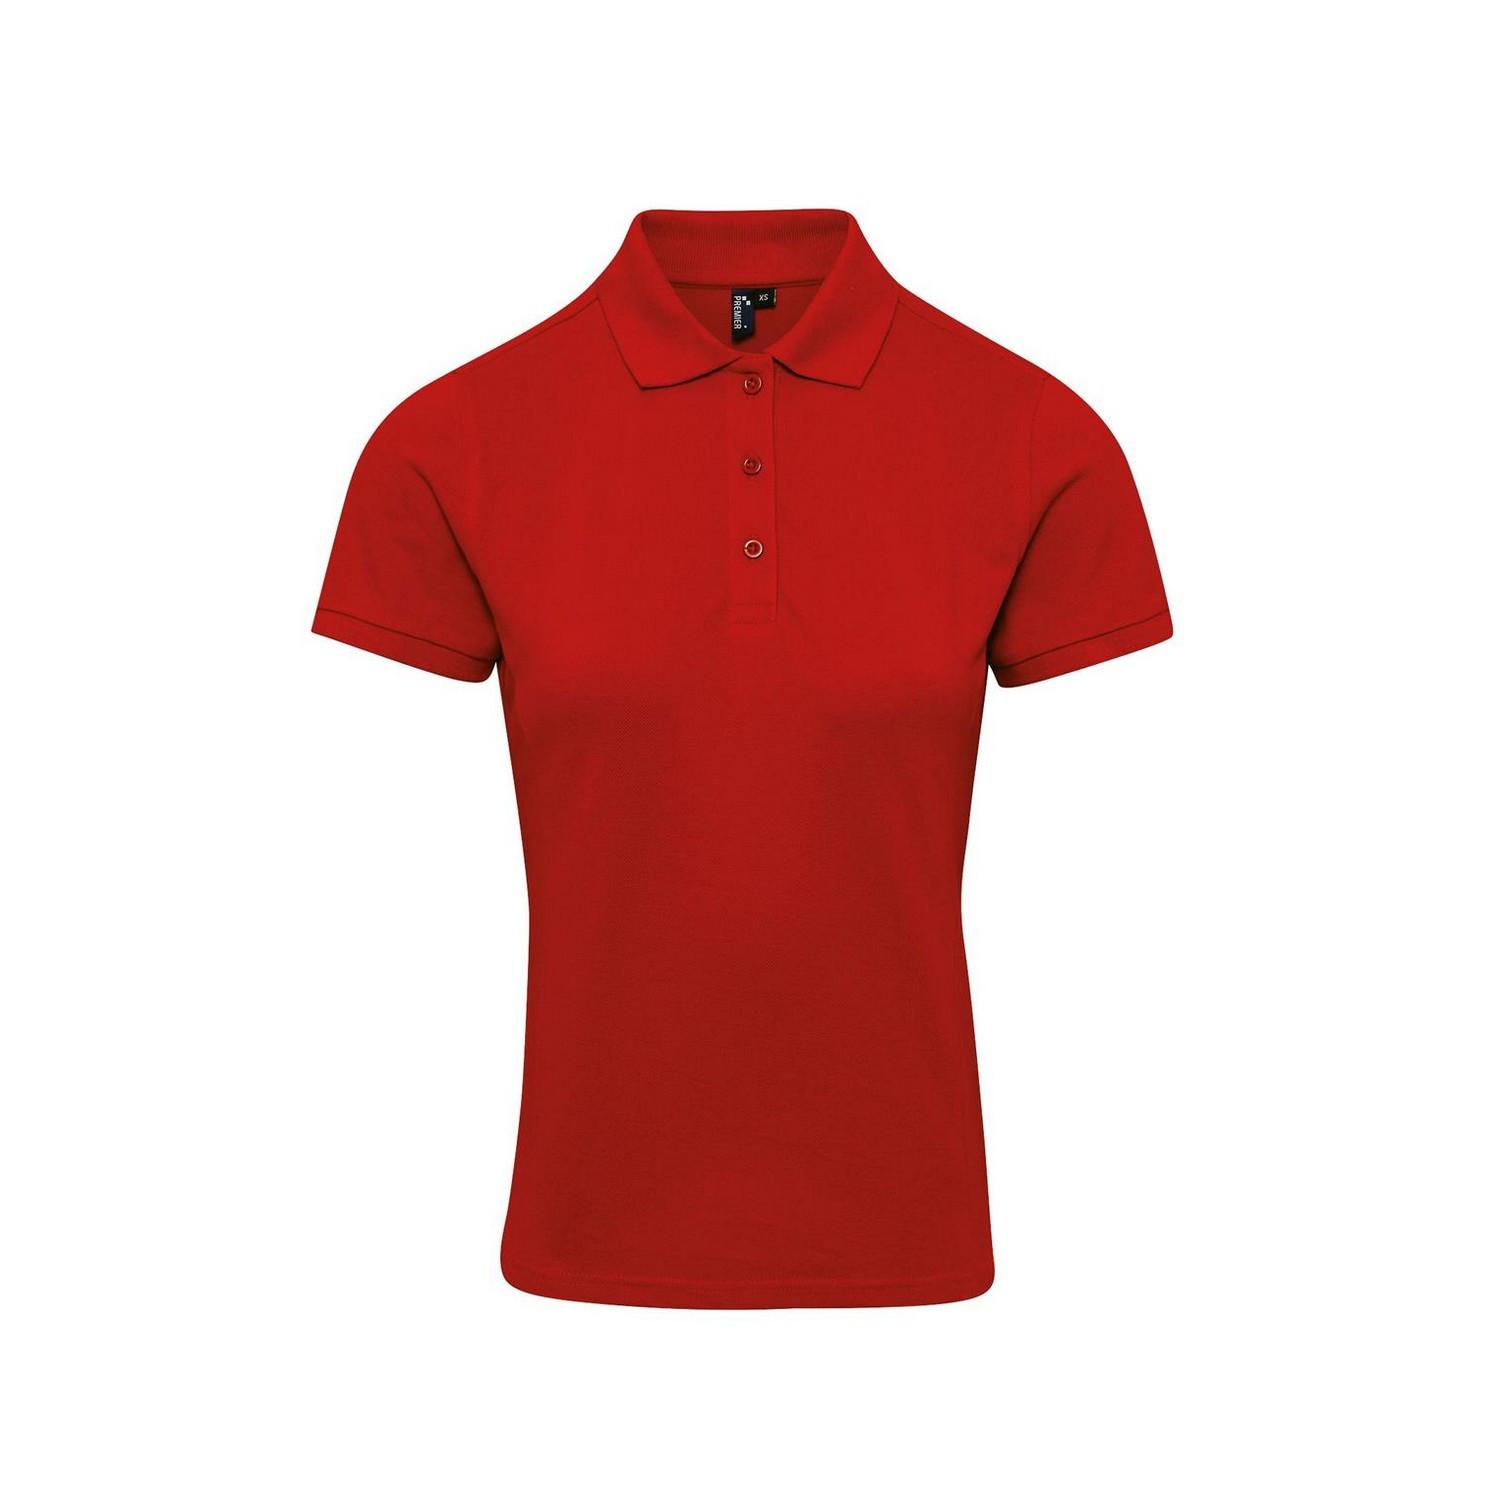 Poloshirt Damen Rot Bunt XL von PREMIER